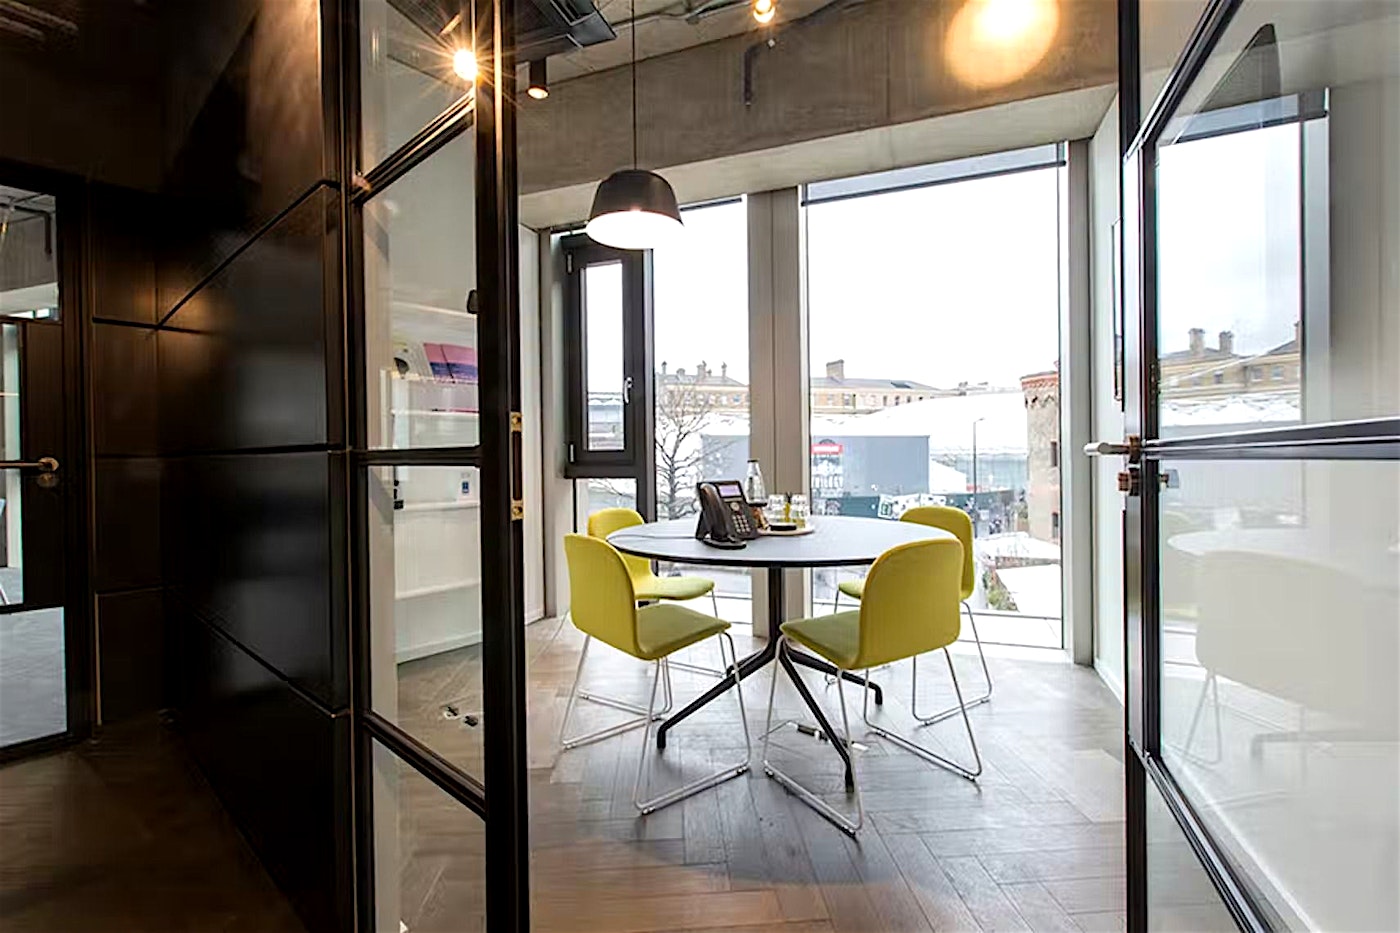 Hire a modern meeting room in Kings Cross